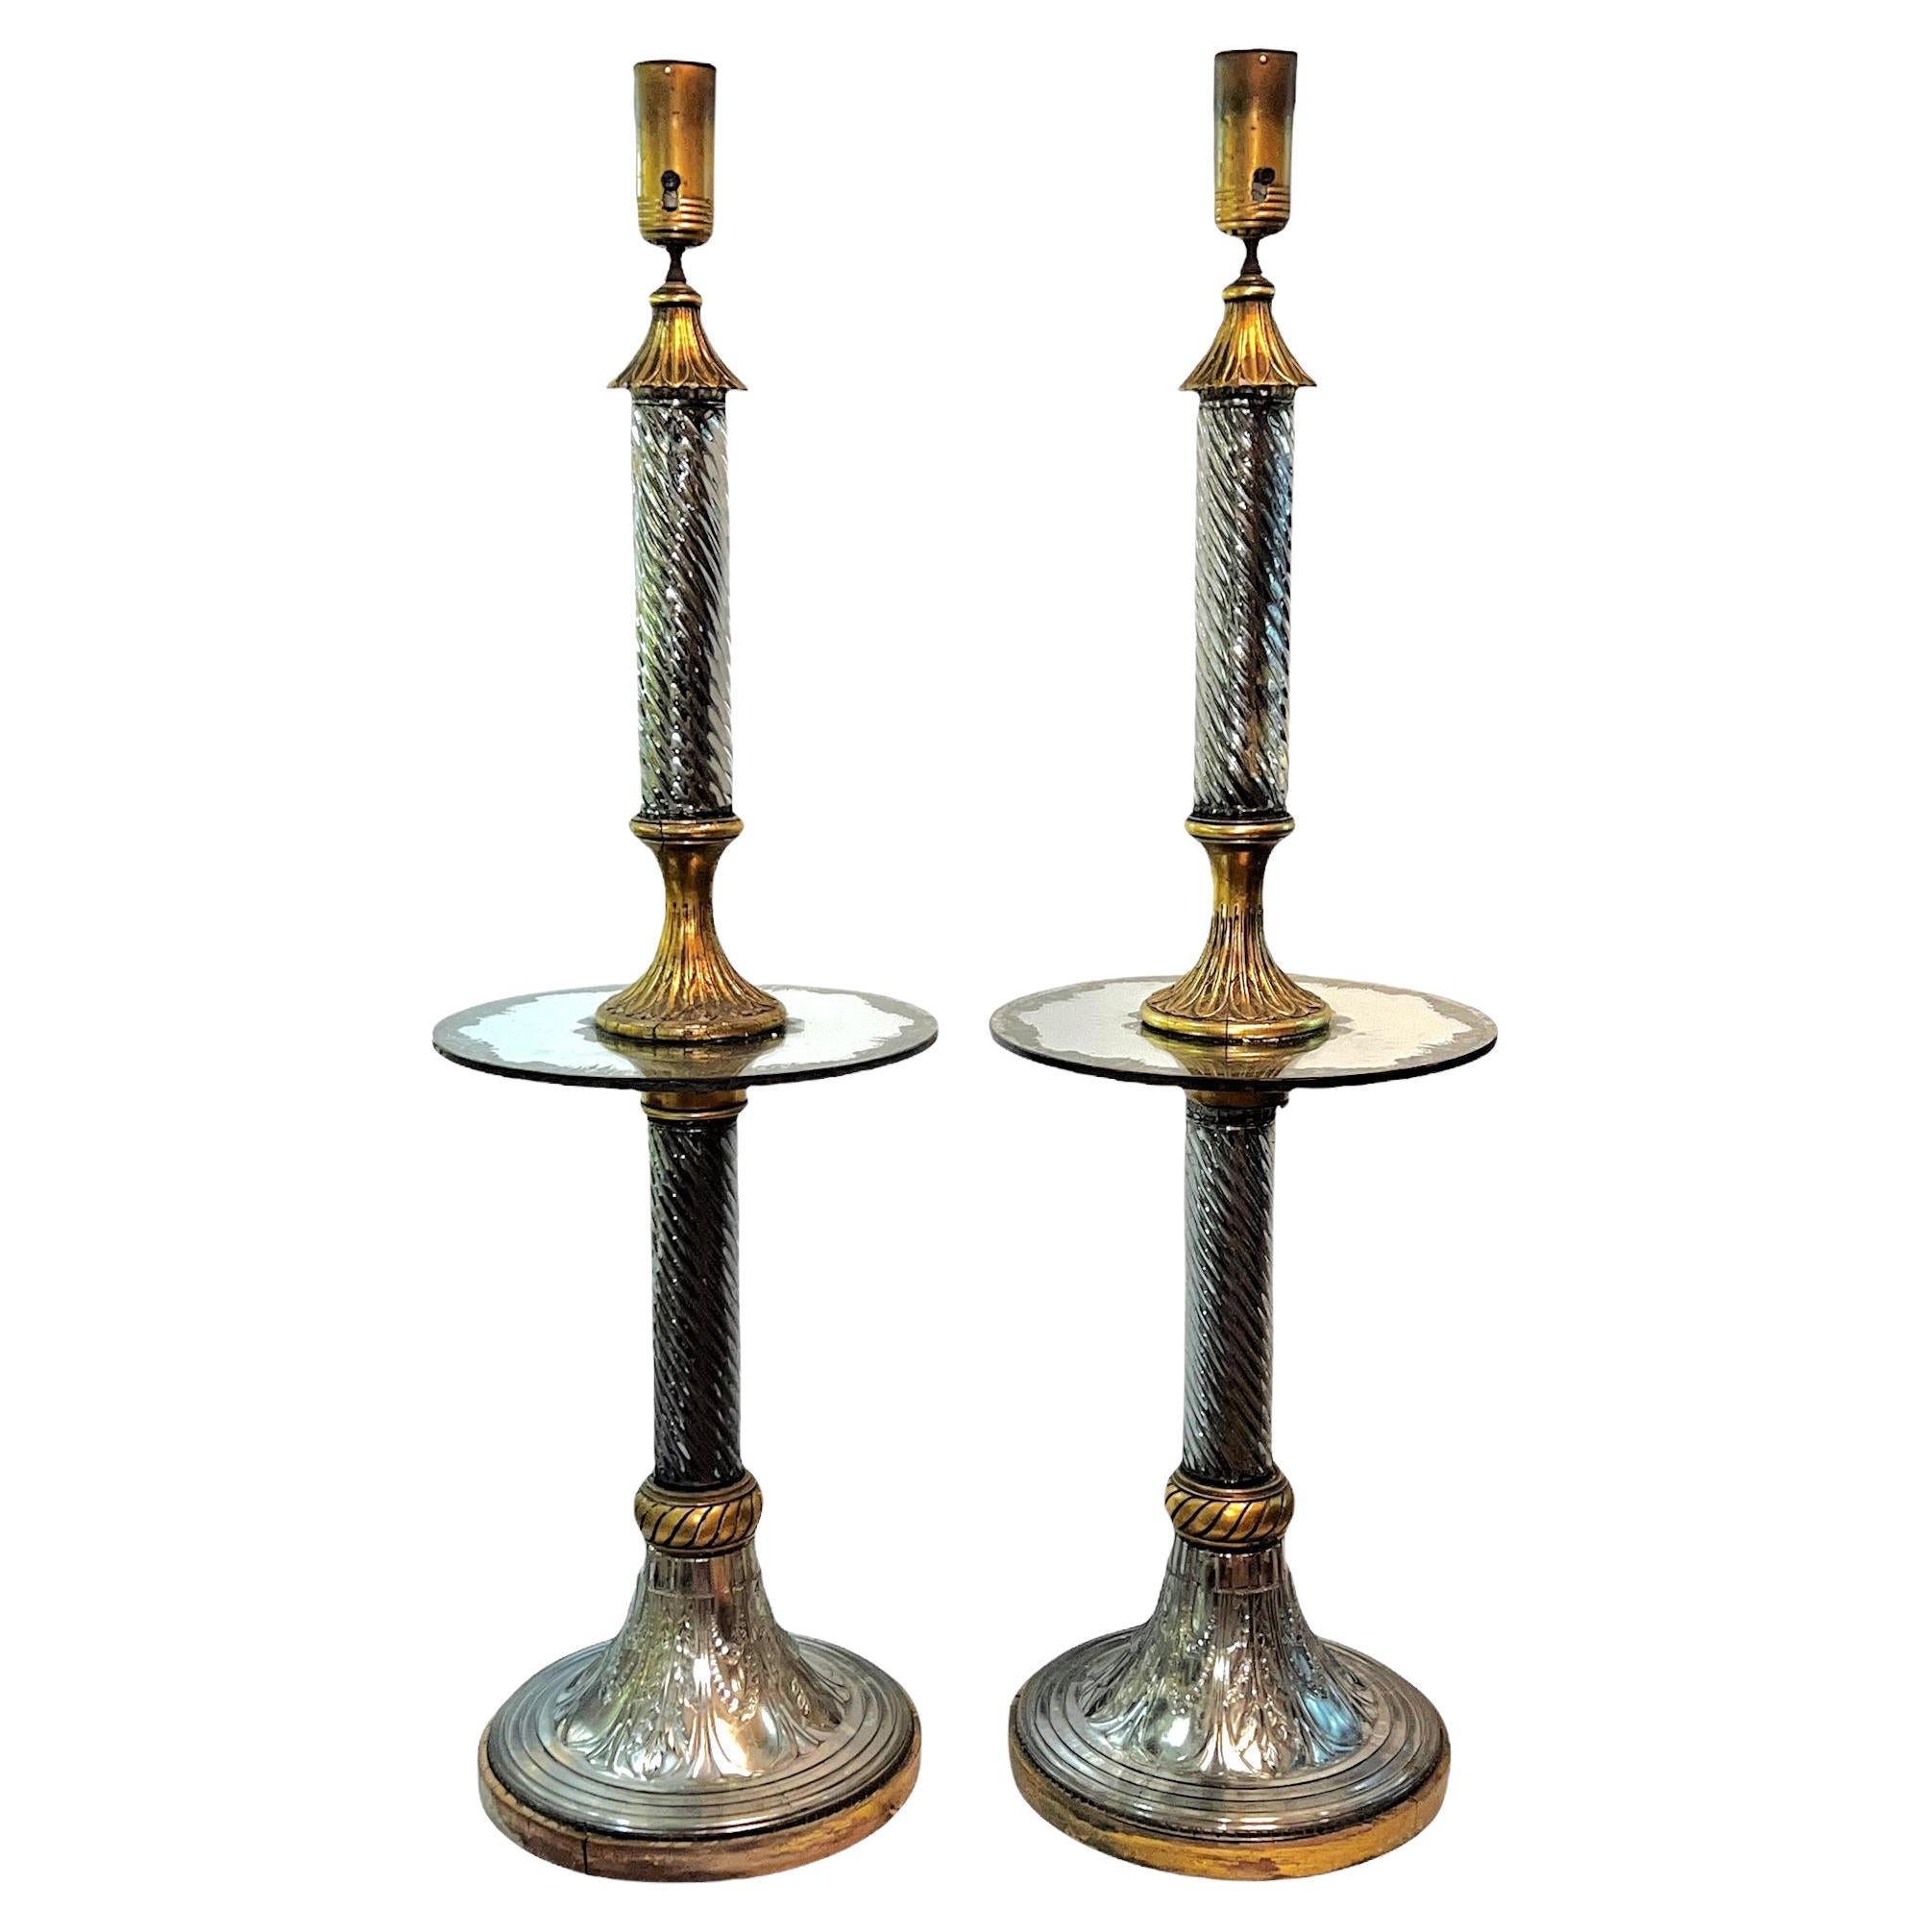 Tables de lampe en bois doré et verre attribuées à la Maison Bagues